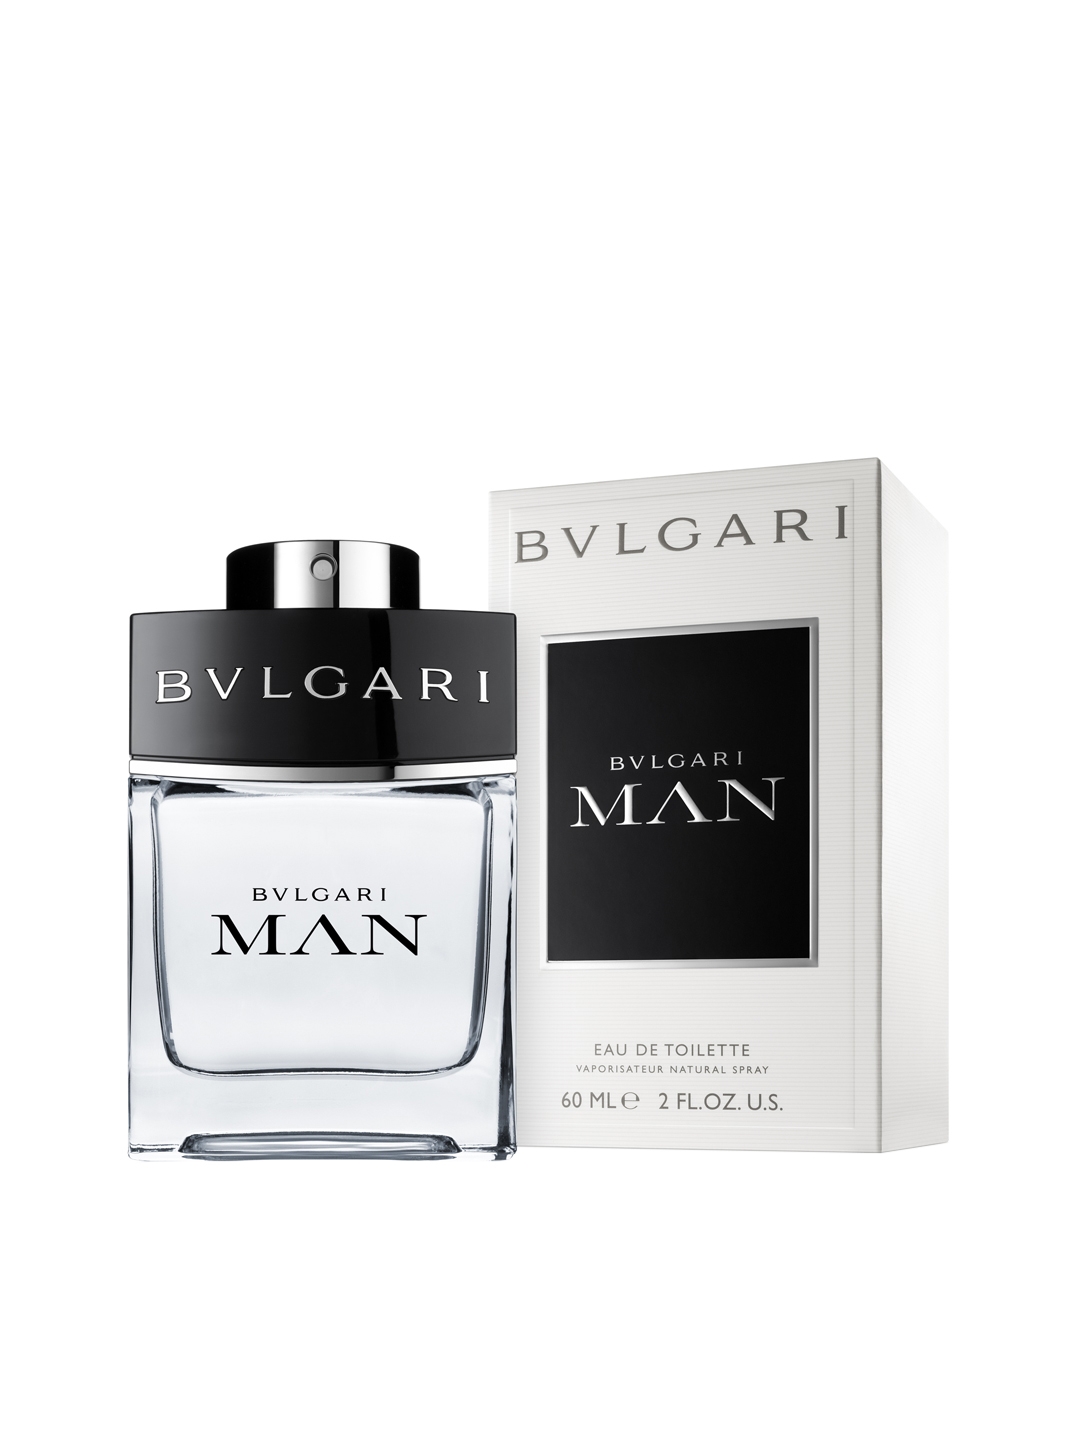 Buy Bvlgari Man EDT 60 Ml - Perfume And 